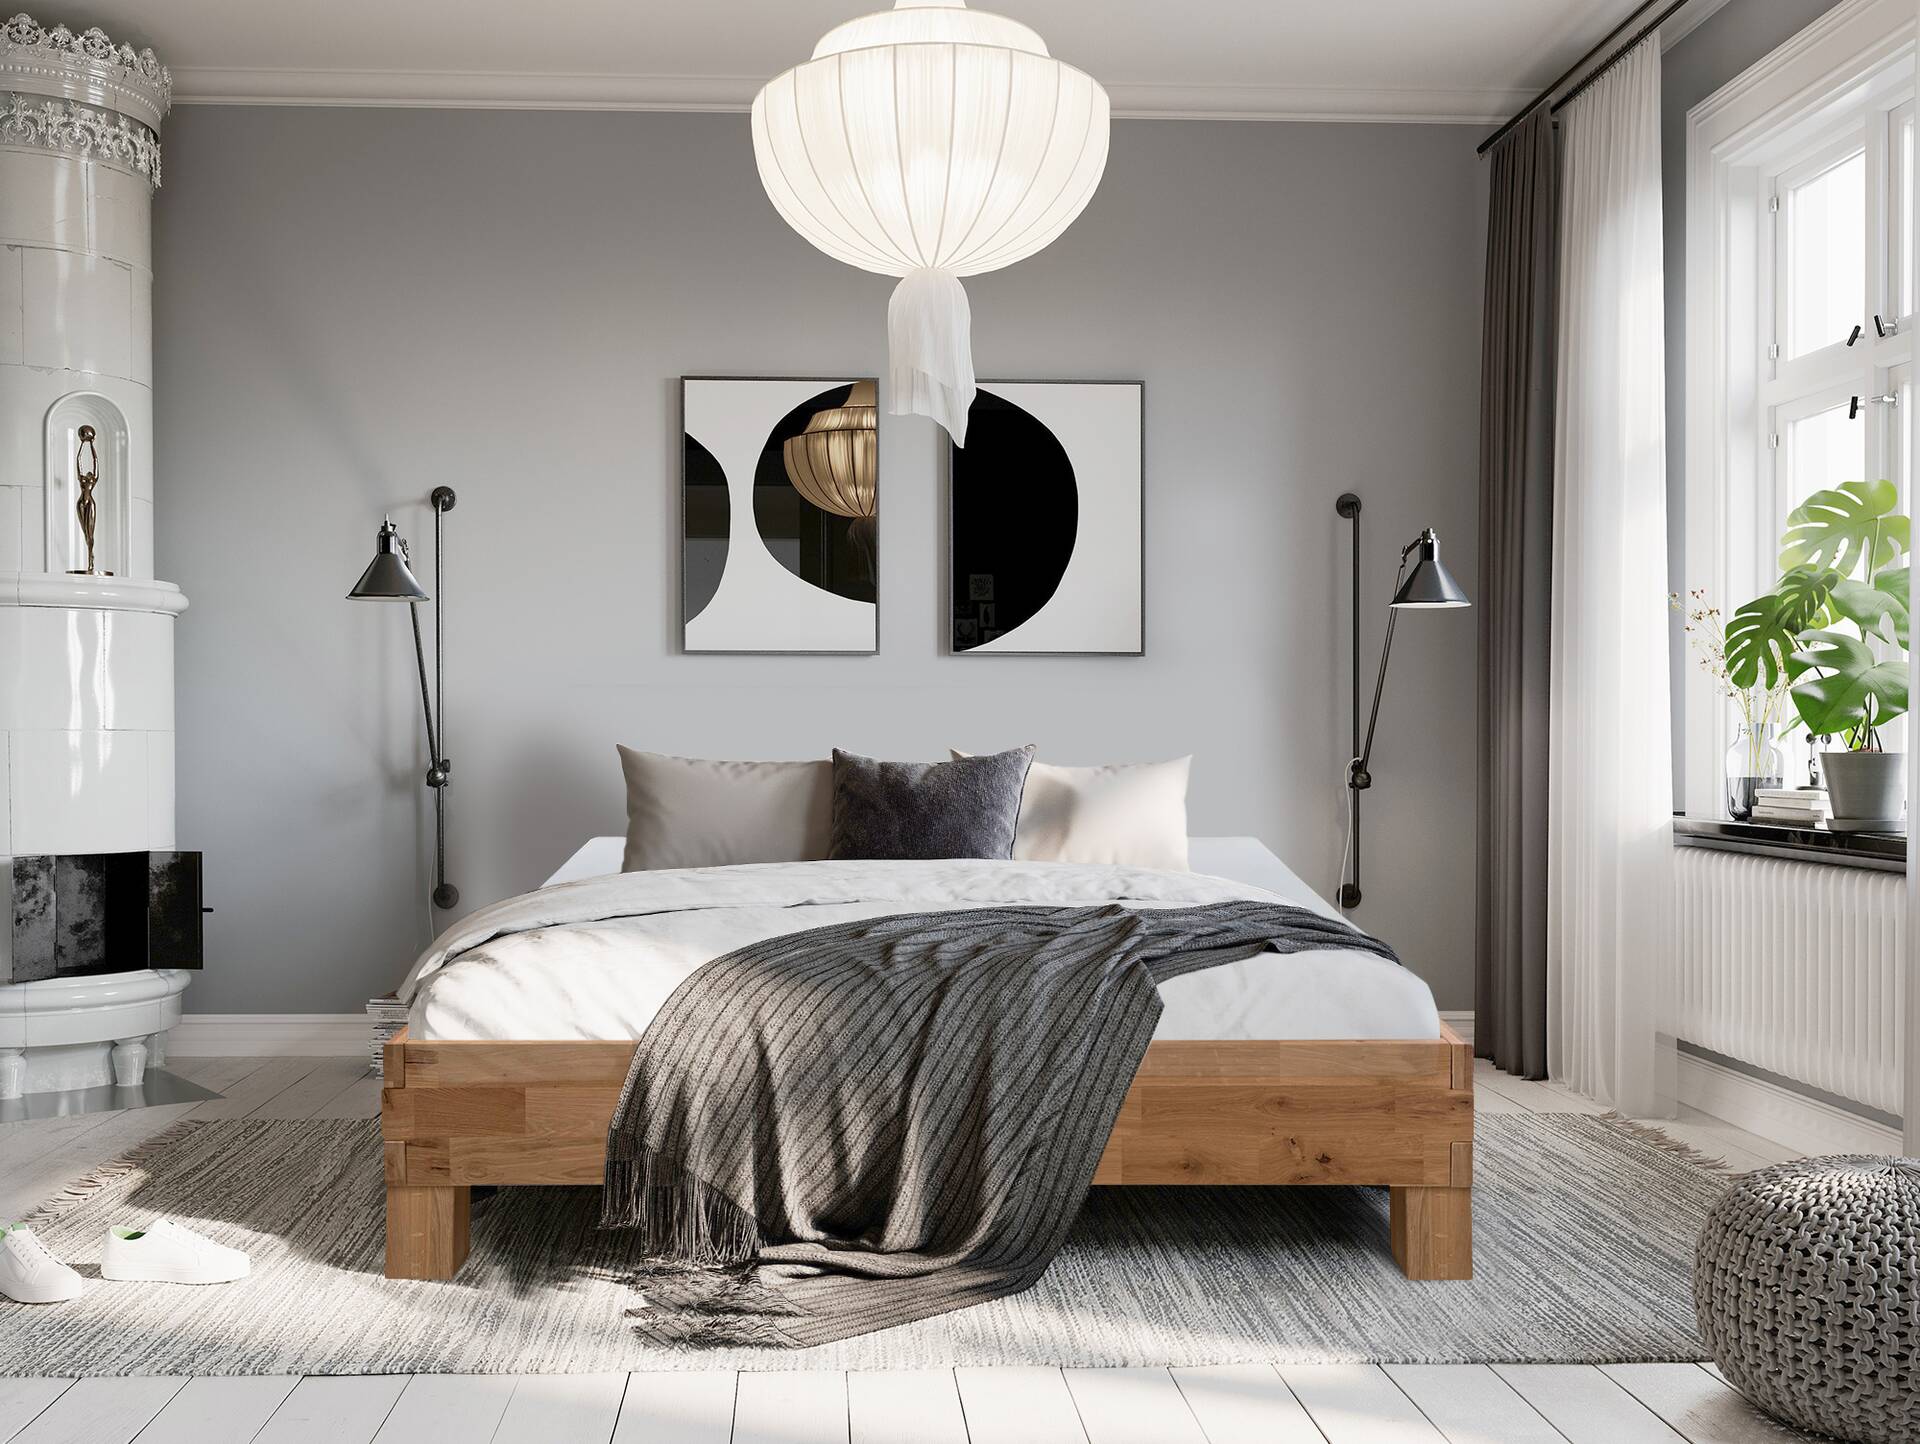 CORDINO 4-Fuß-Bett aus Eiche ohne Kopfteil, Material Massivholz 160 x 200 cm | Eiche lackiert | gehackt